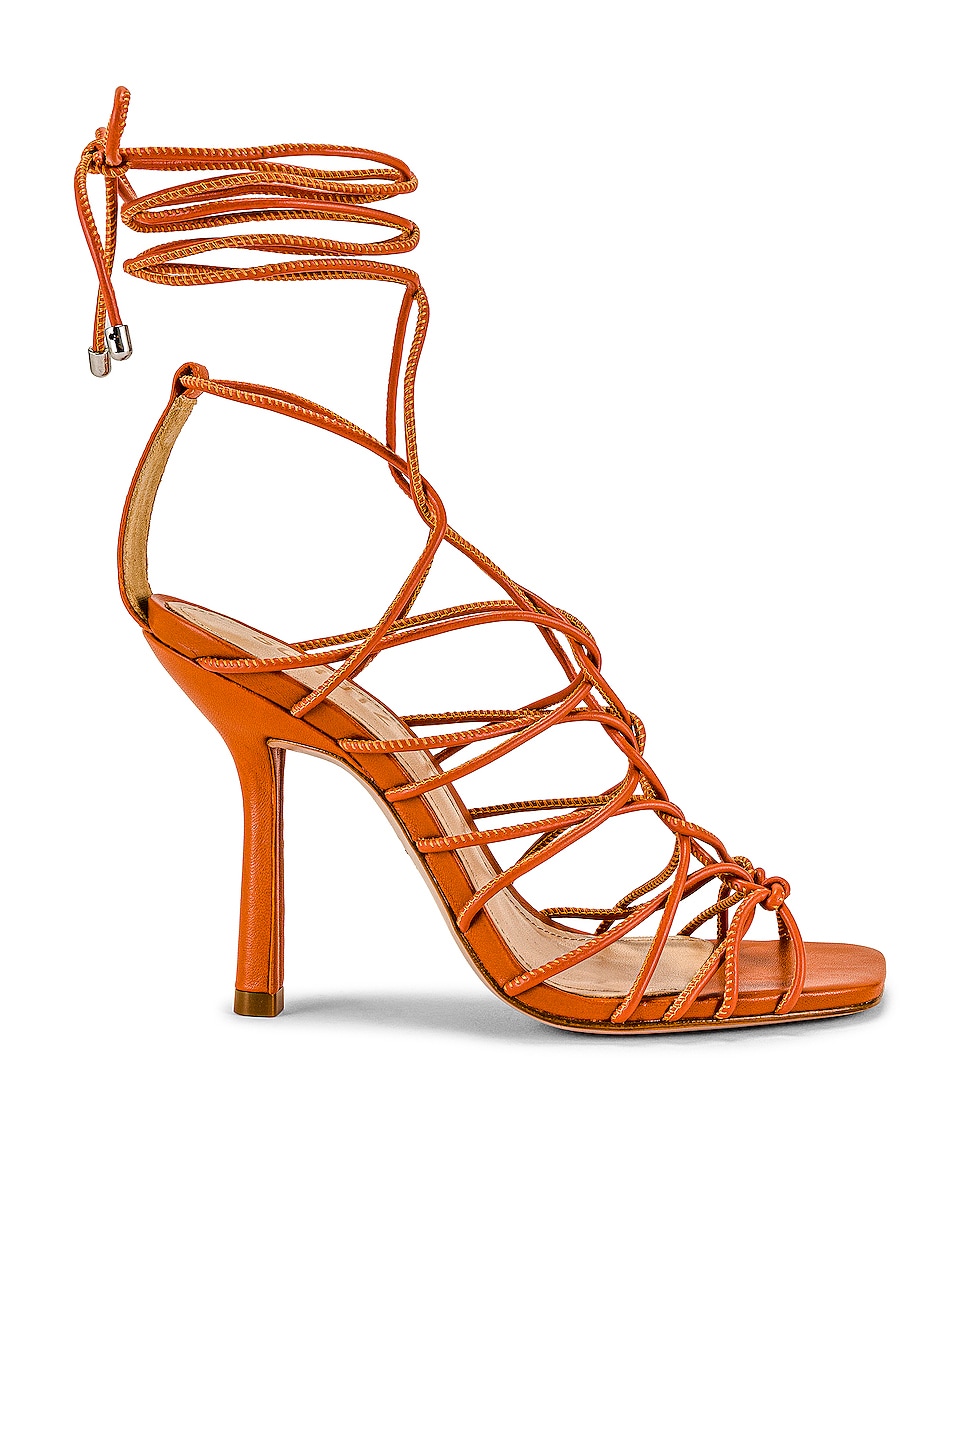 Strappy orange heels